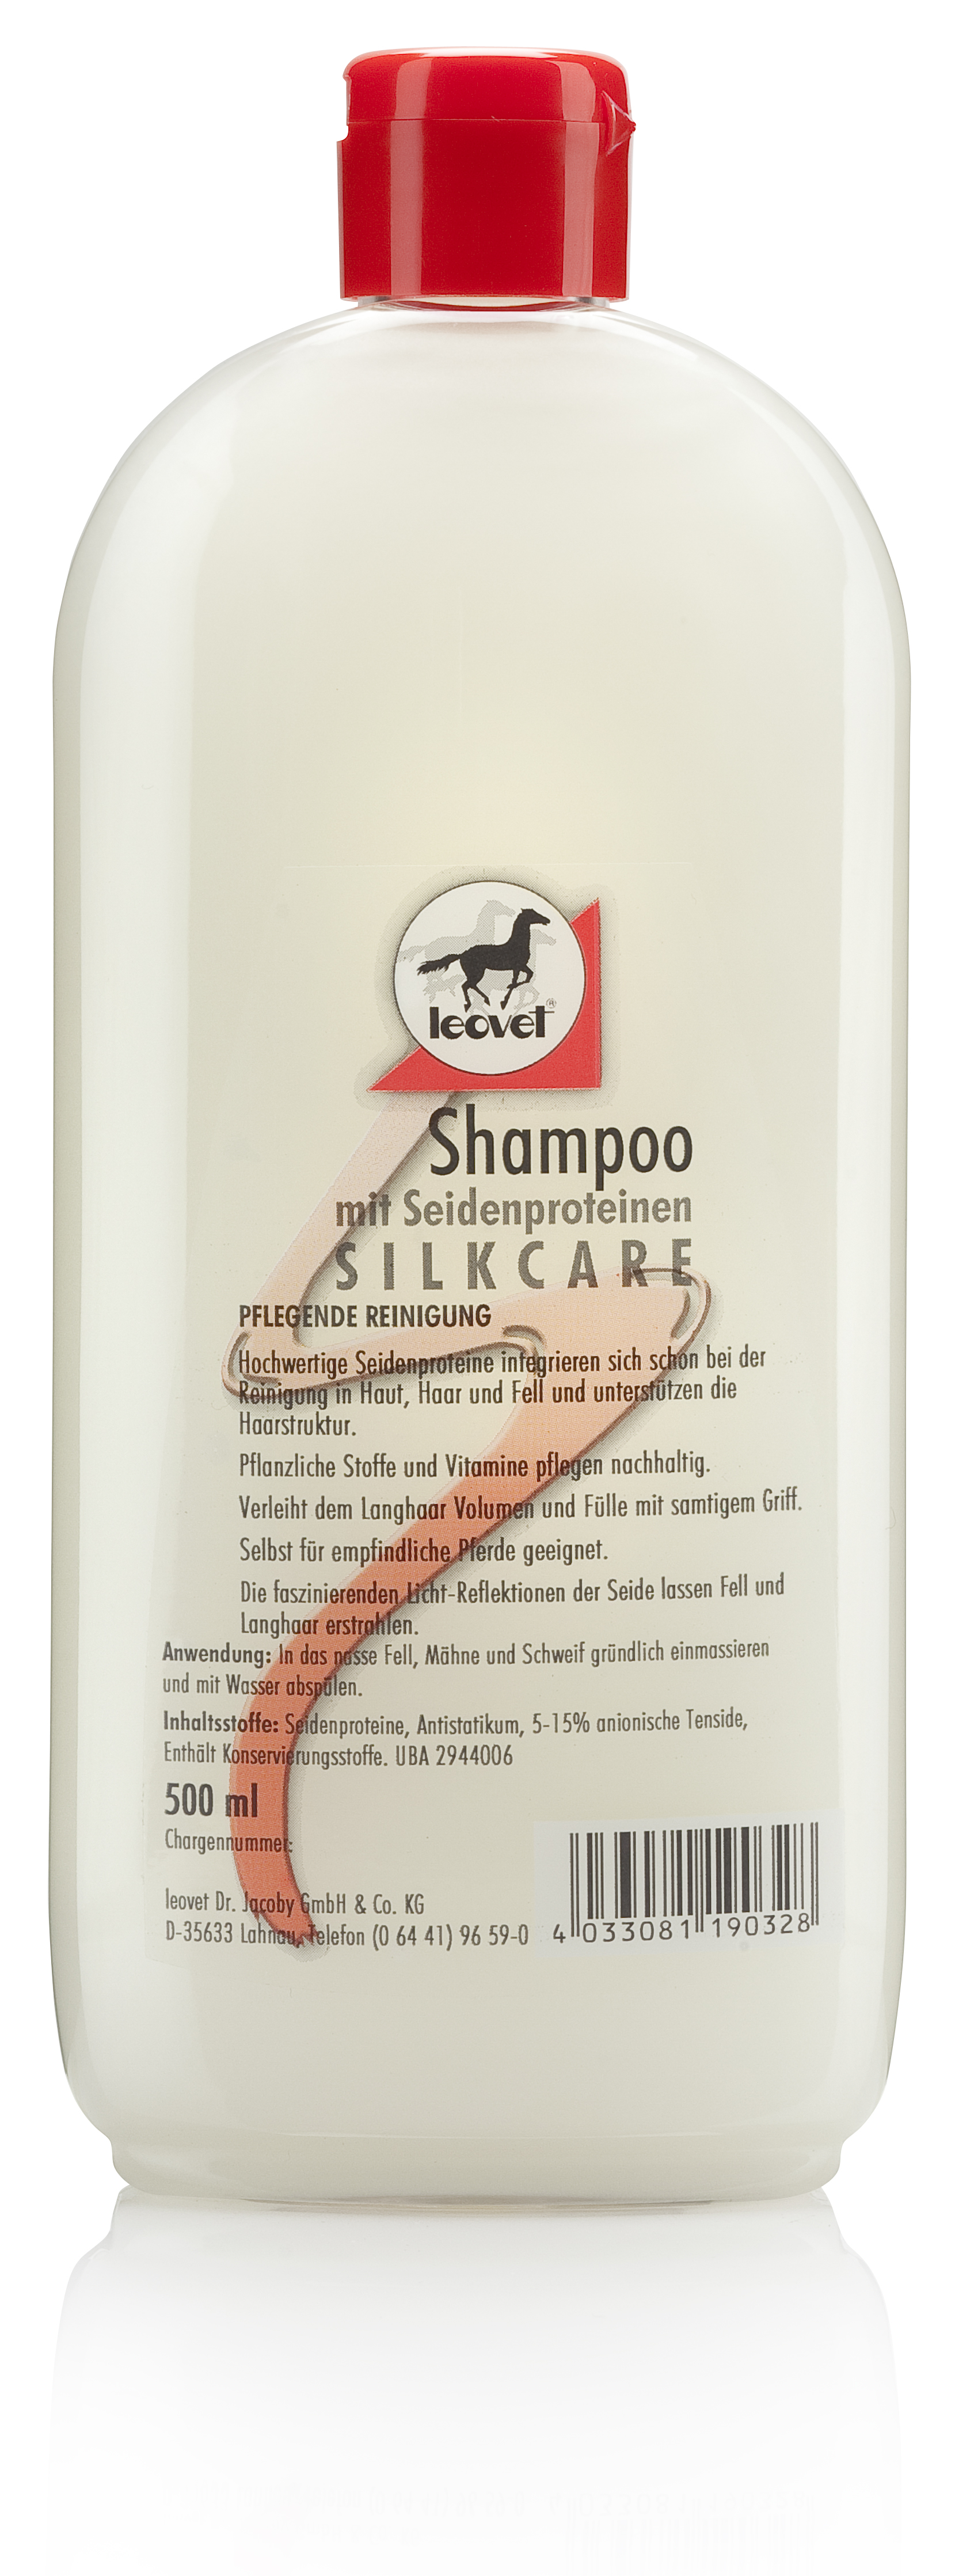 Silkcare Shampoo